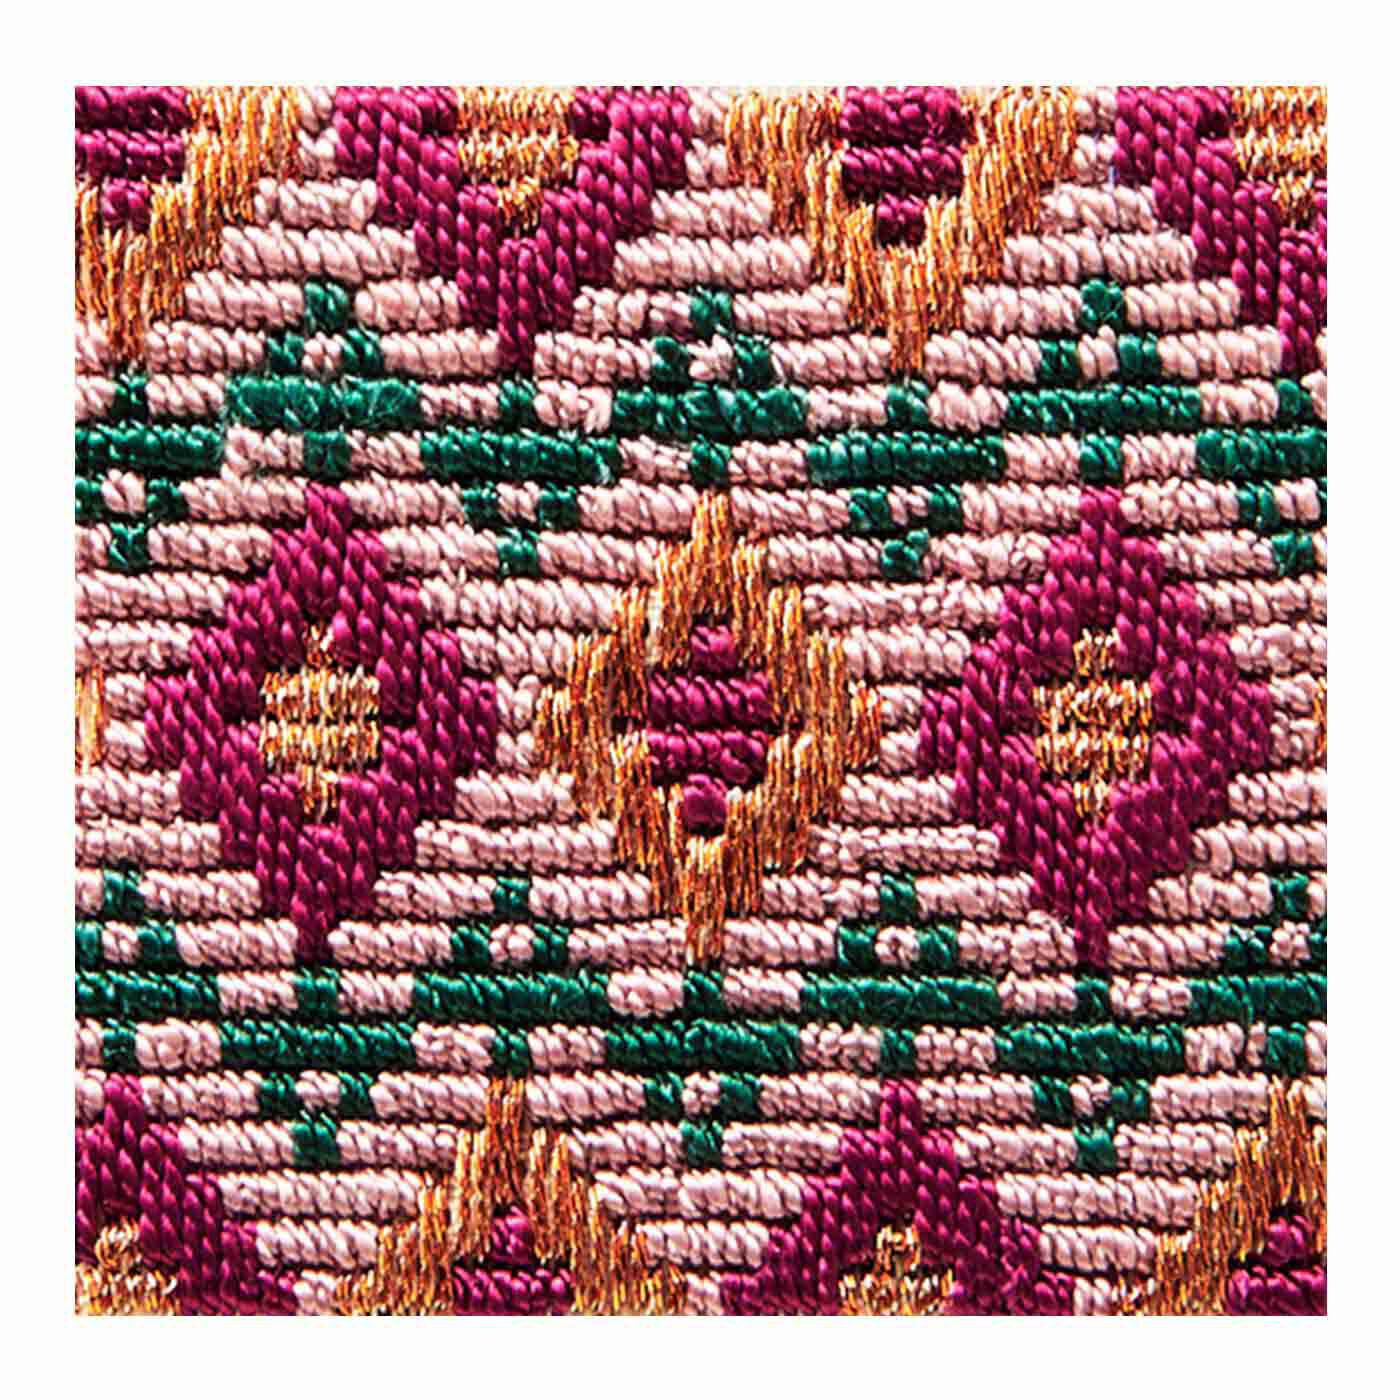 Couturier|絹糸の光沢にうっとり さまざまな模様を楽しむ絽（ろ）刺しの会|ざくろ菱